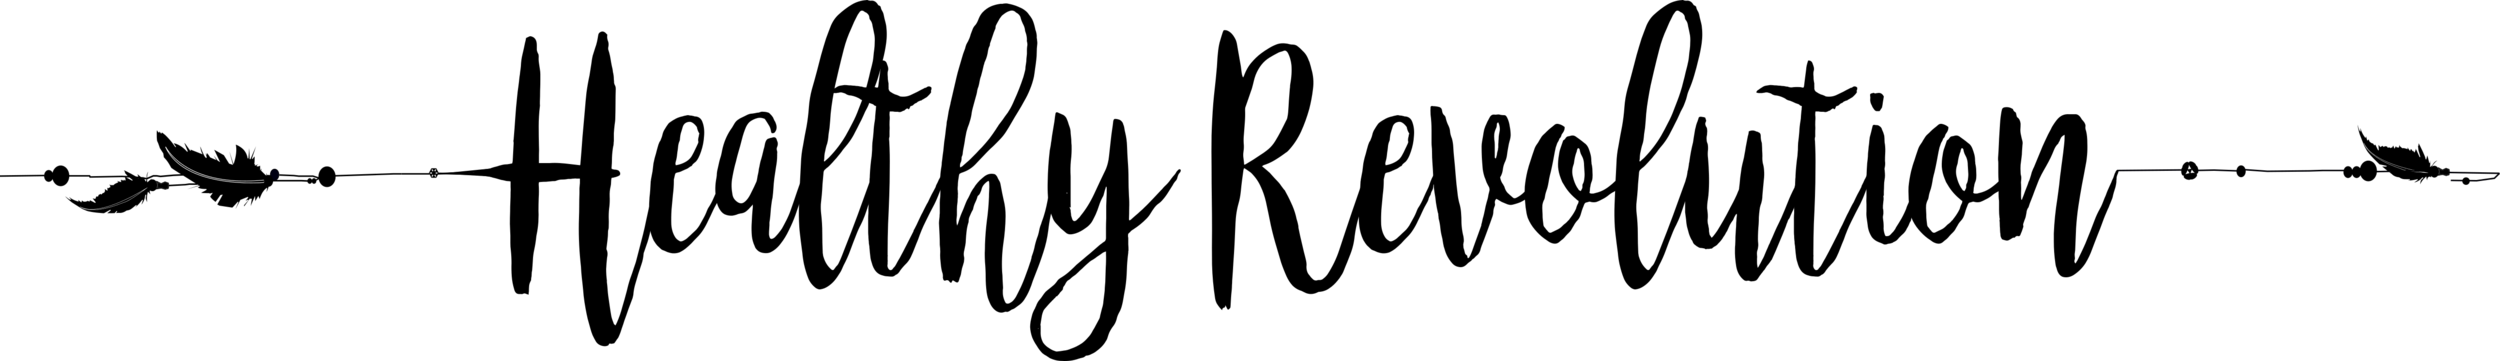 Logo HR (Negro).png